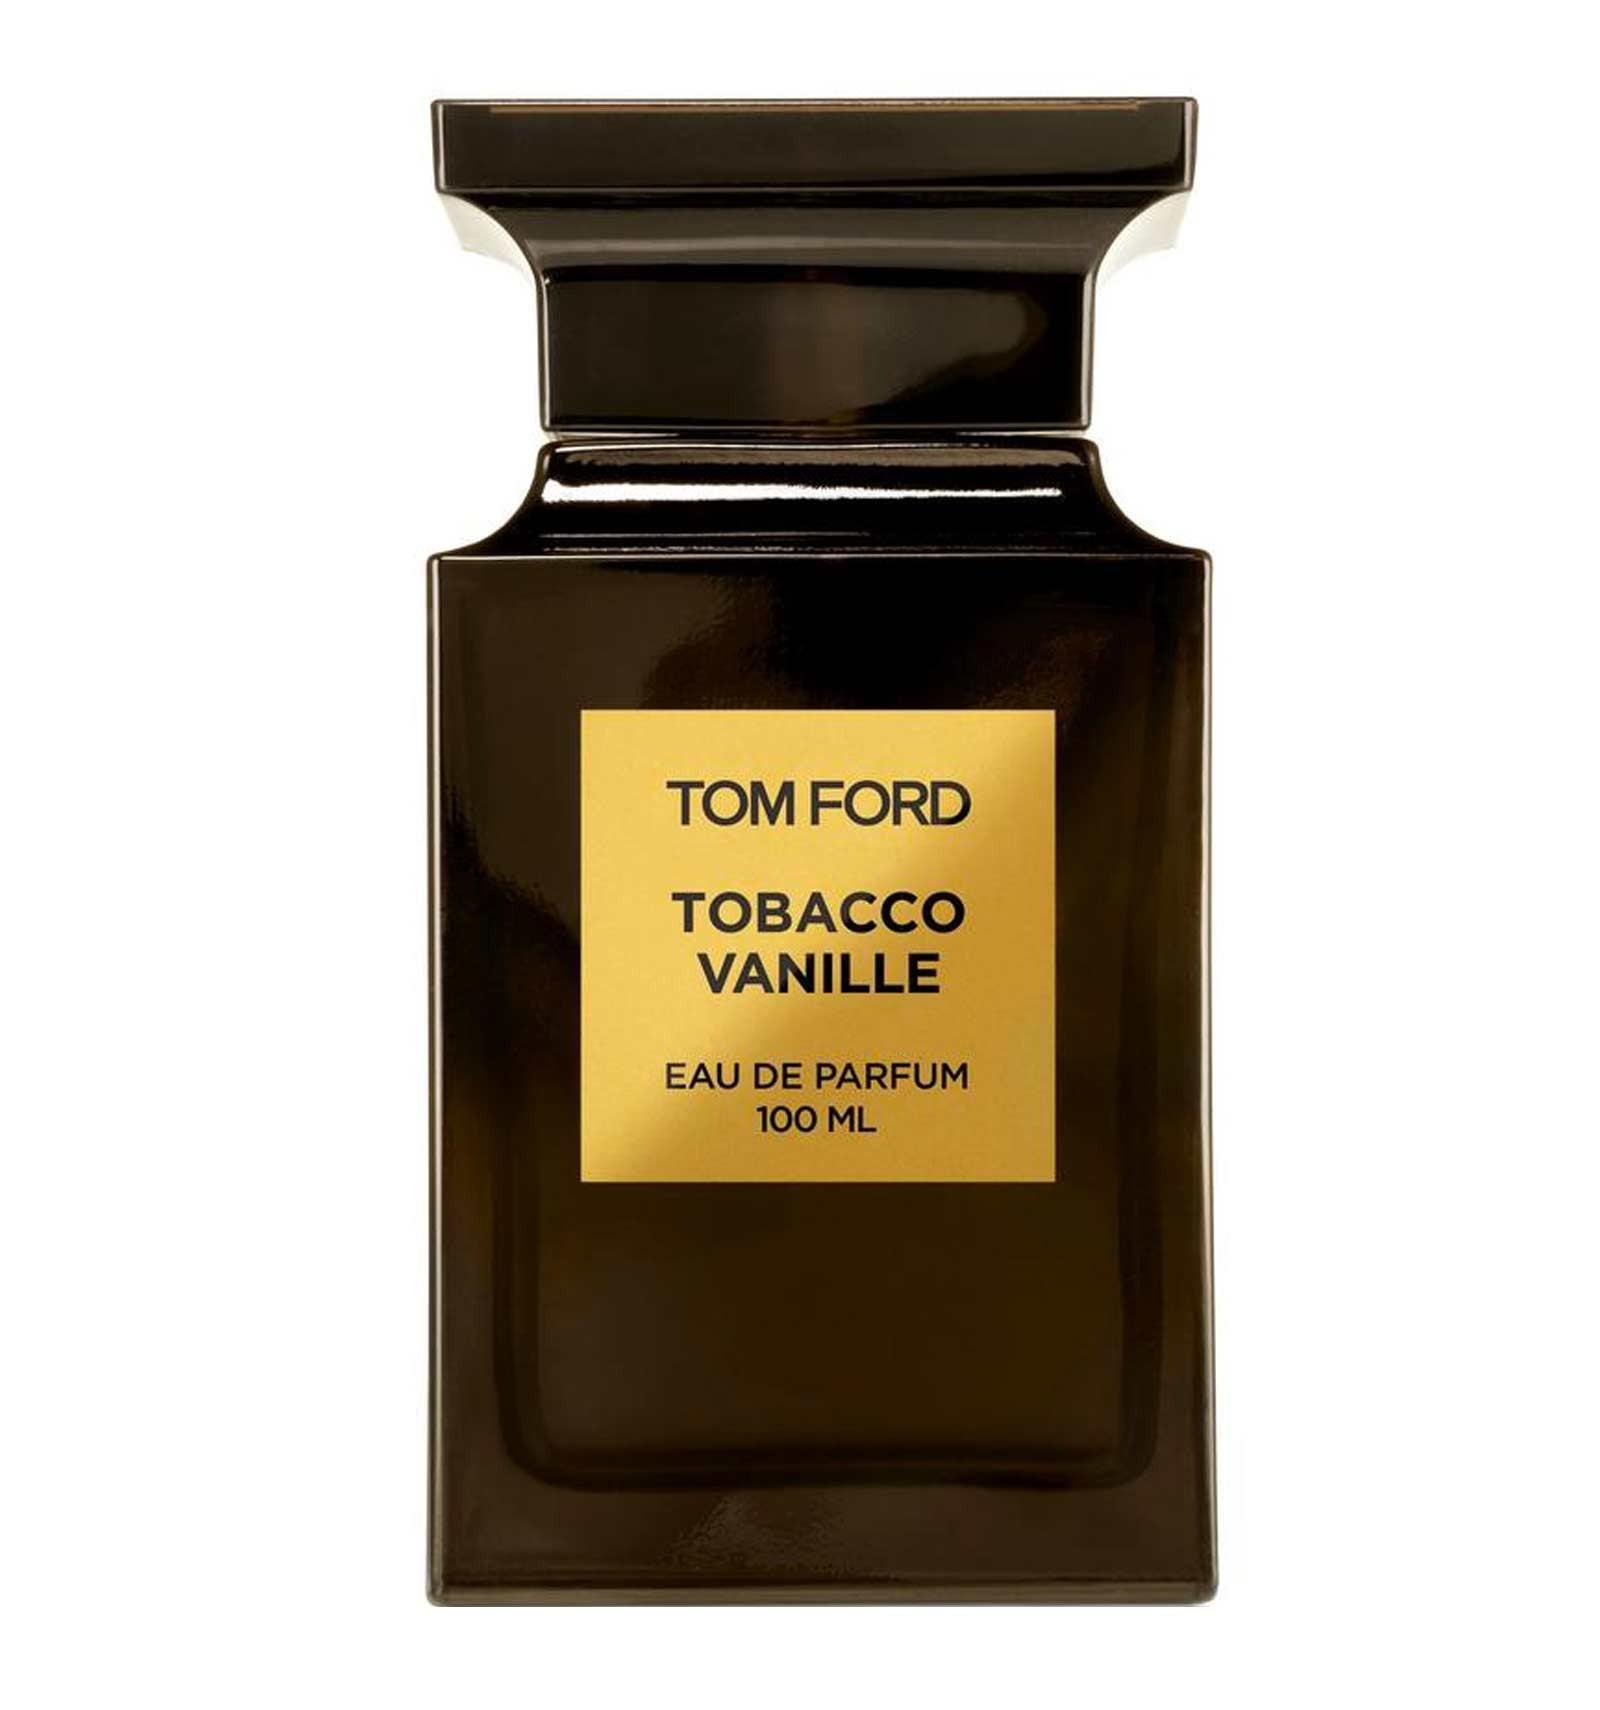 Tom Ford Tobacco Vanille Eau de Parfum